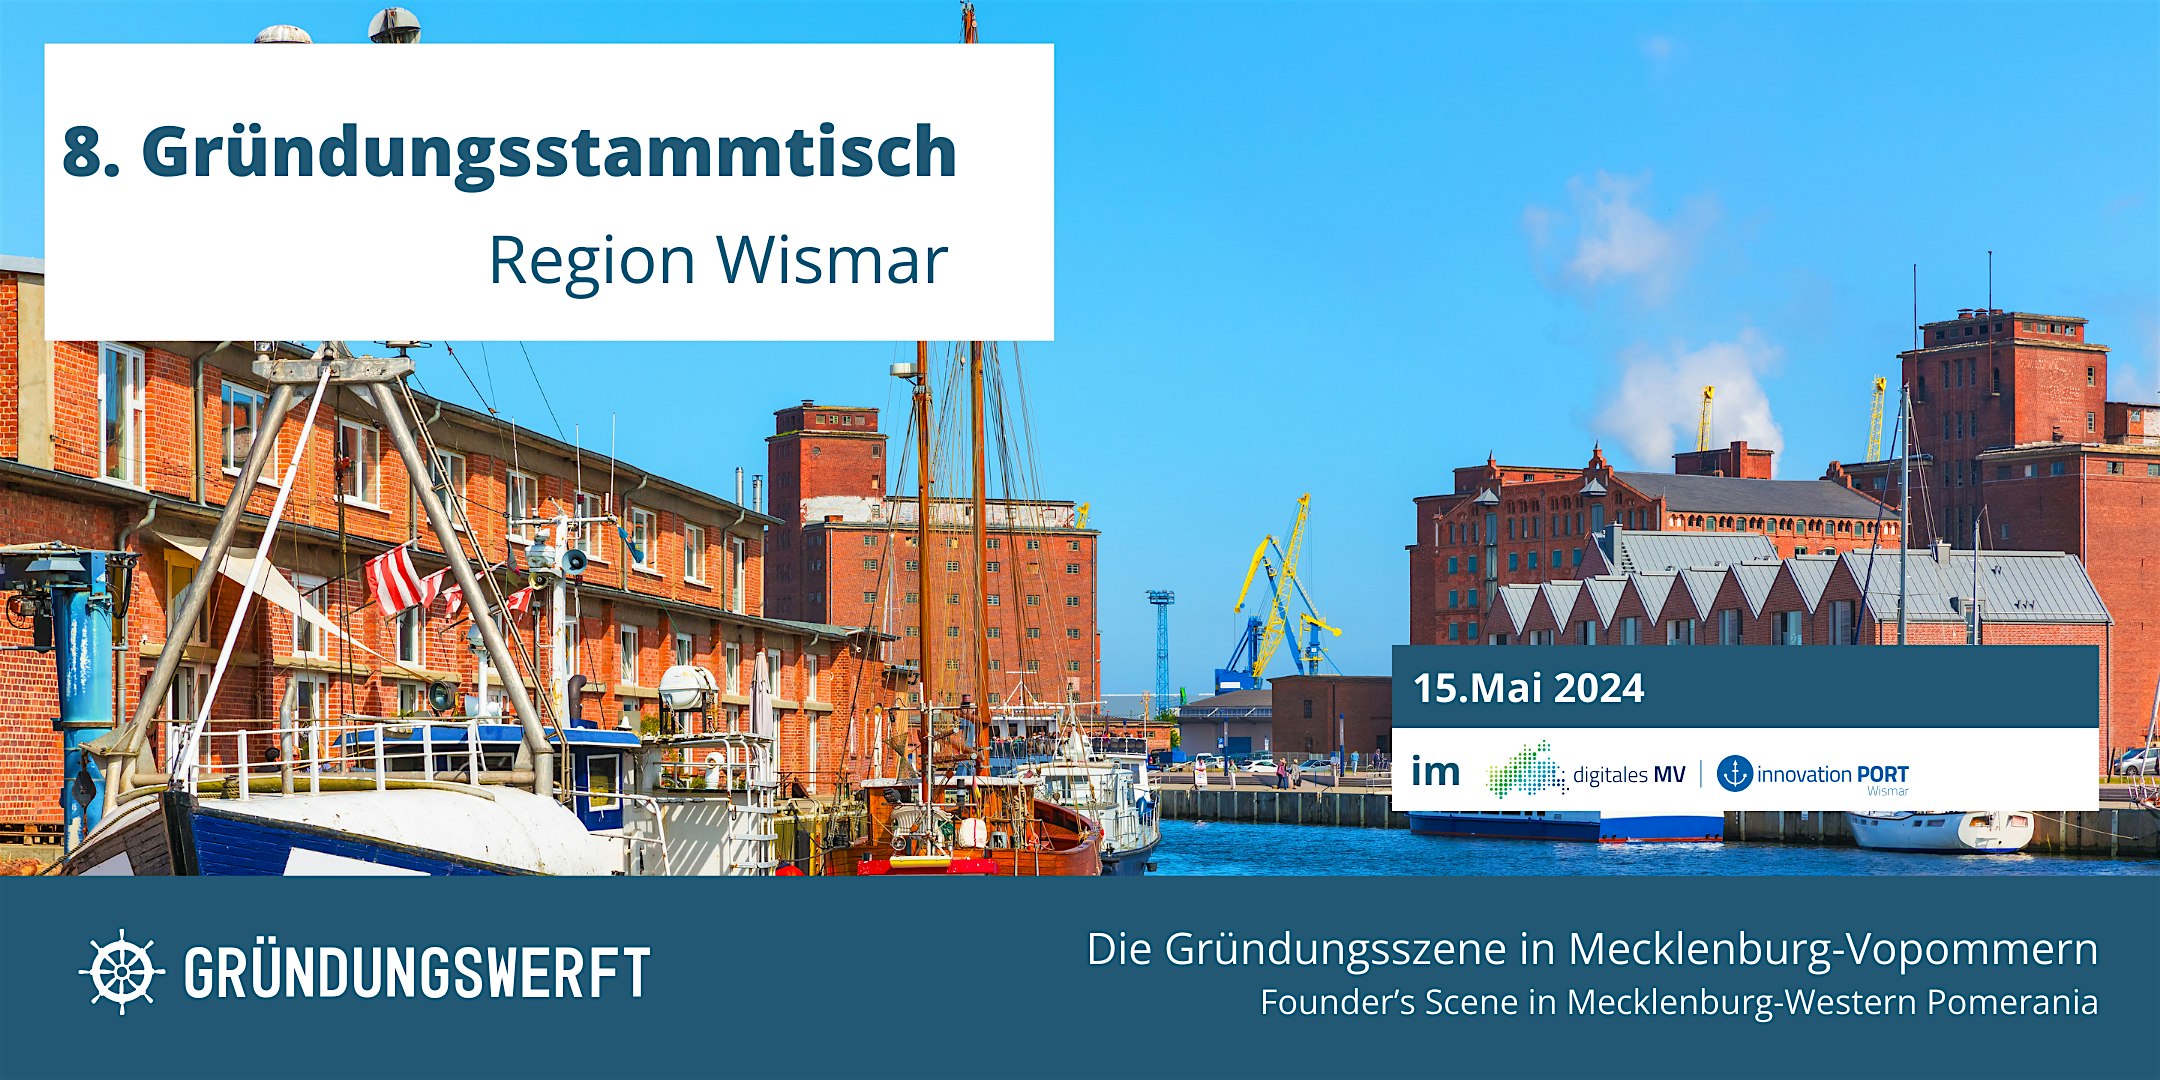 Veranstaltungsbild für die Veranstaltung 8. Gründungsstammtisch Region Wismar im Innovationport